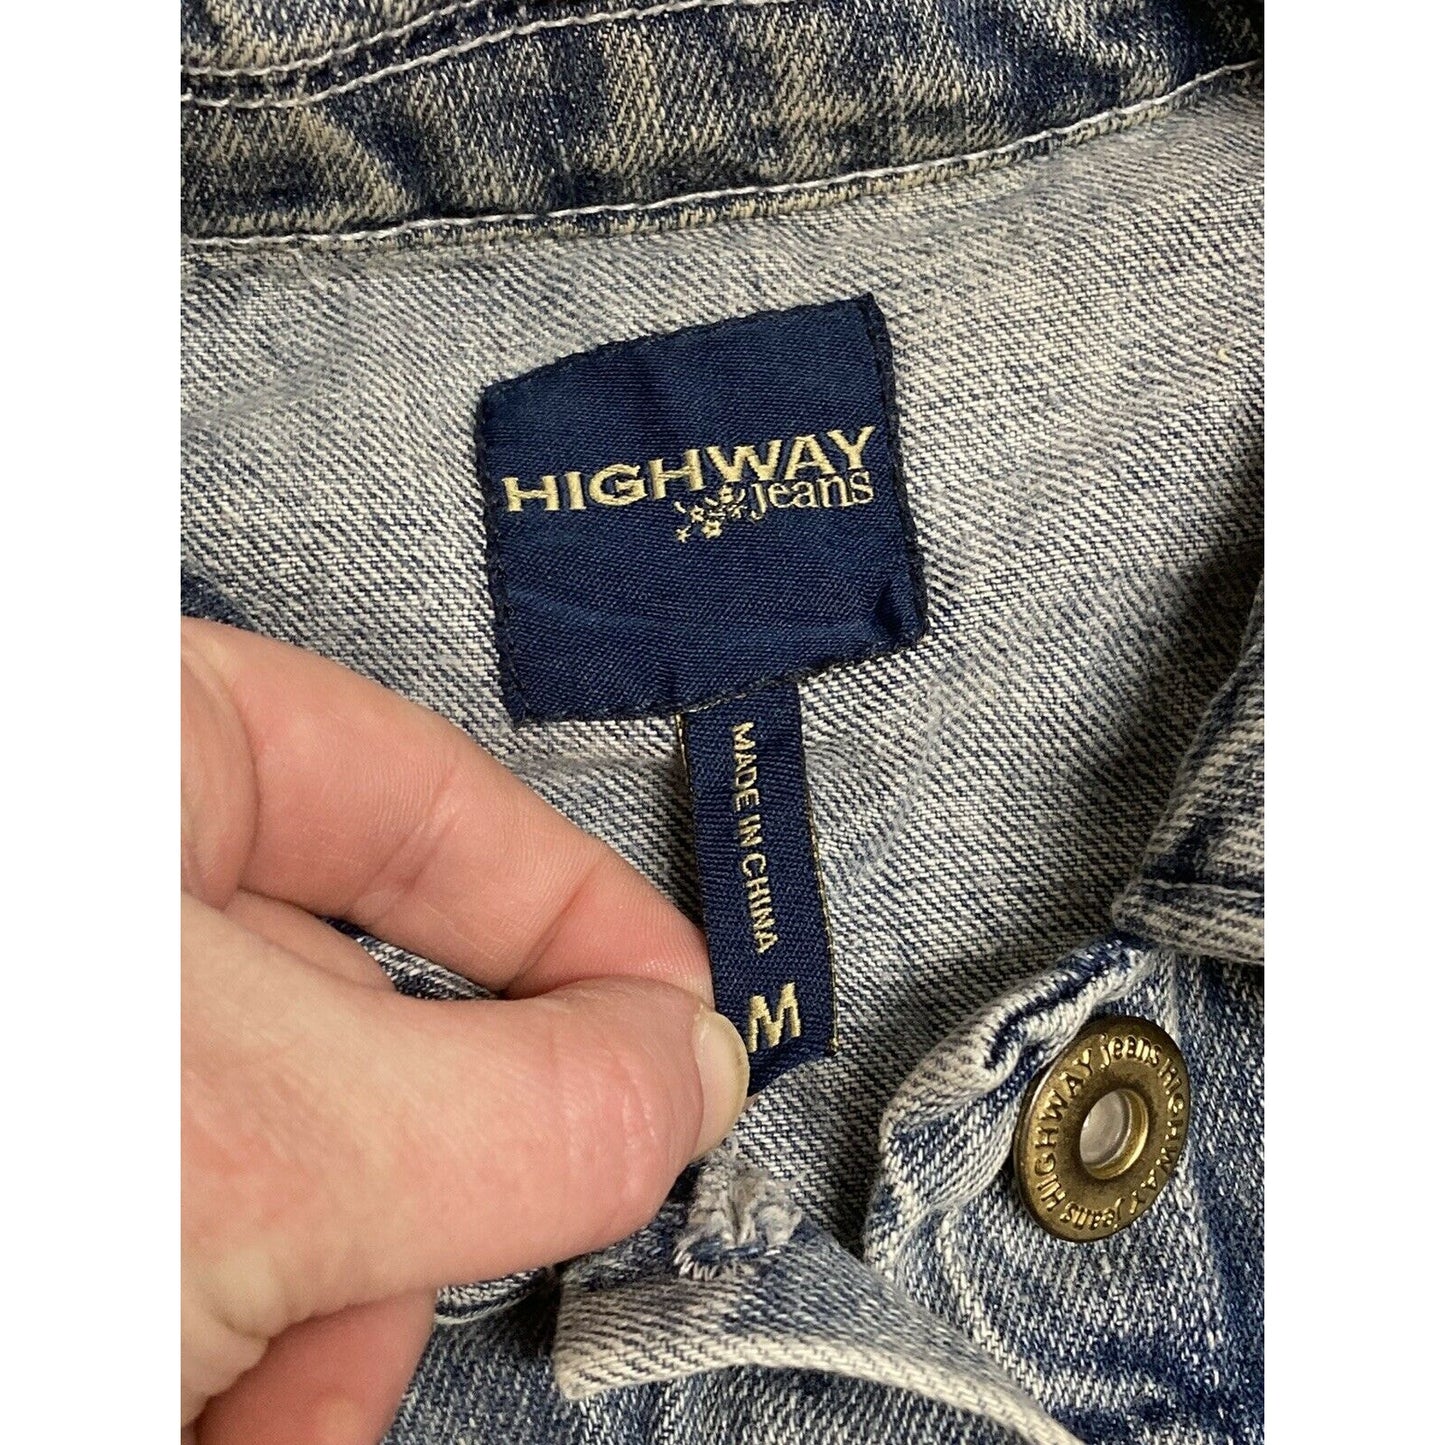 Highway Jeans Lightwash Studded Cropped Bomber Jean Jacket Size Medium